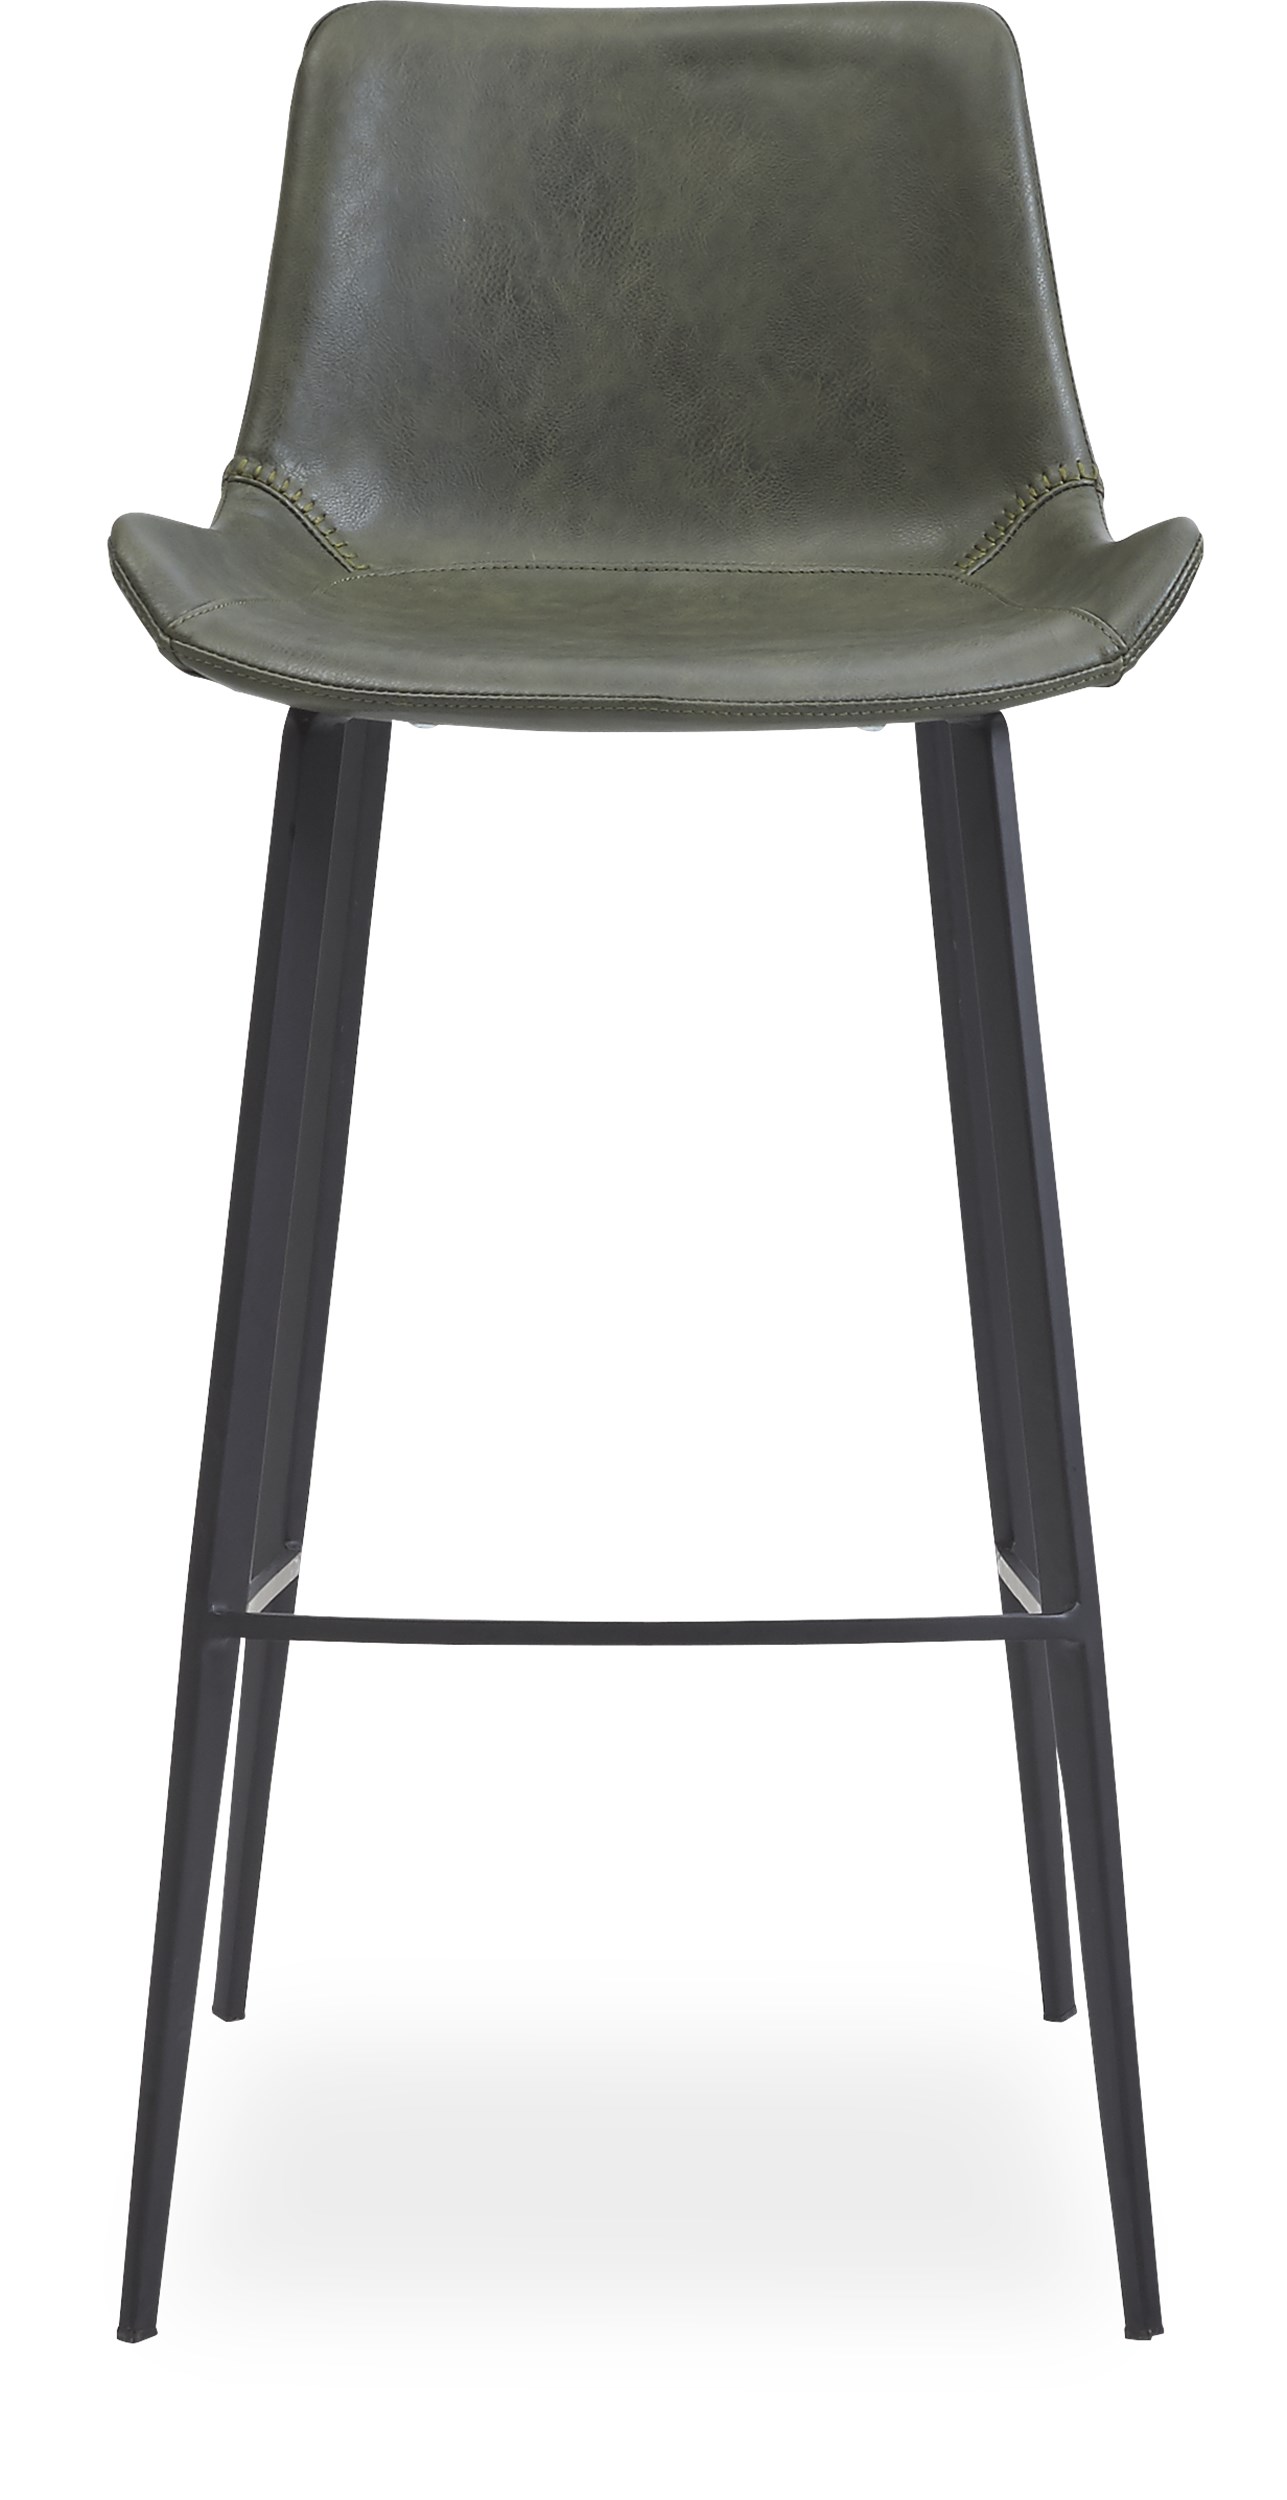 Hype Barstol - Sits i Vintage grönt konstläder och ben i svartlackerad metall